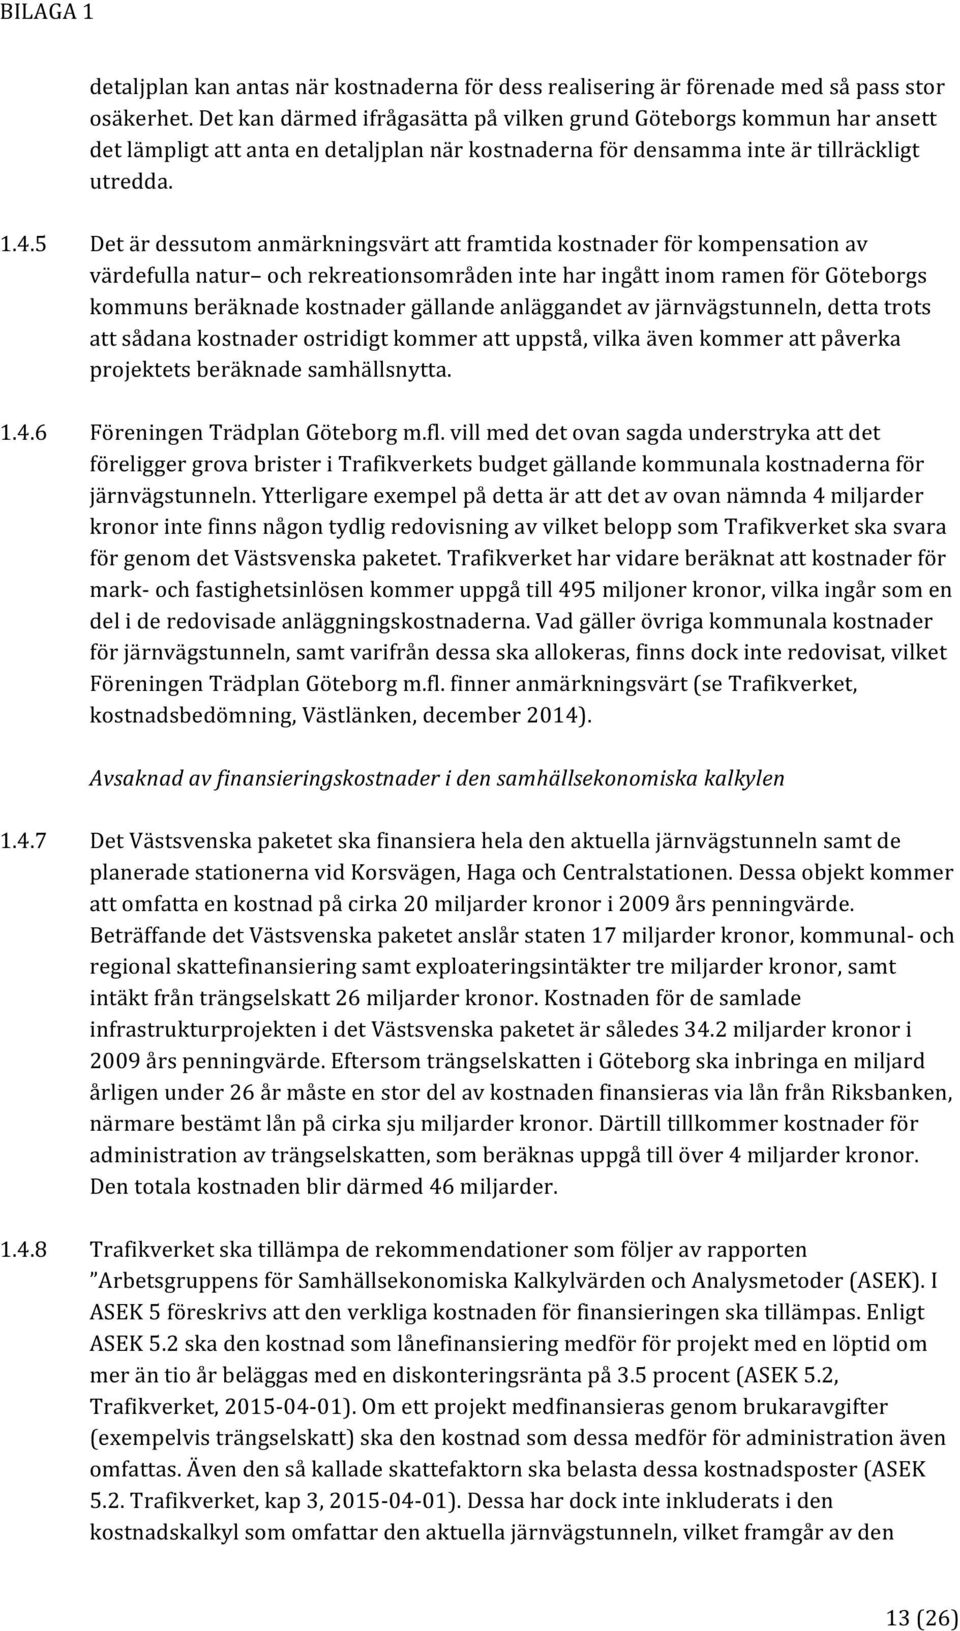 5 Det är dessutom anmärkningsvärt att framtida kostnader för kompensation av värdefulla natur och rekreationsområden inte har ingått inom ramen för Göteborgs kommuns beräknade kostnader gällande